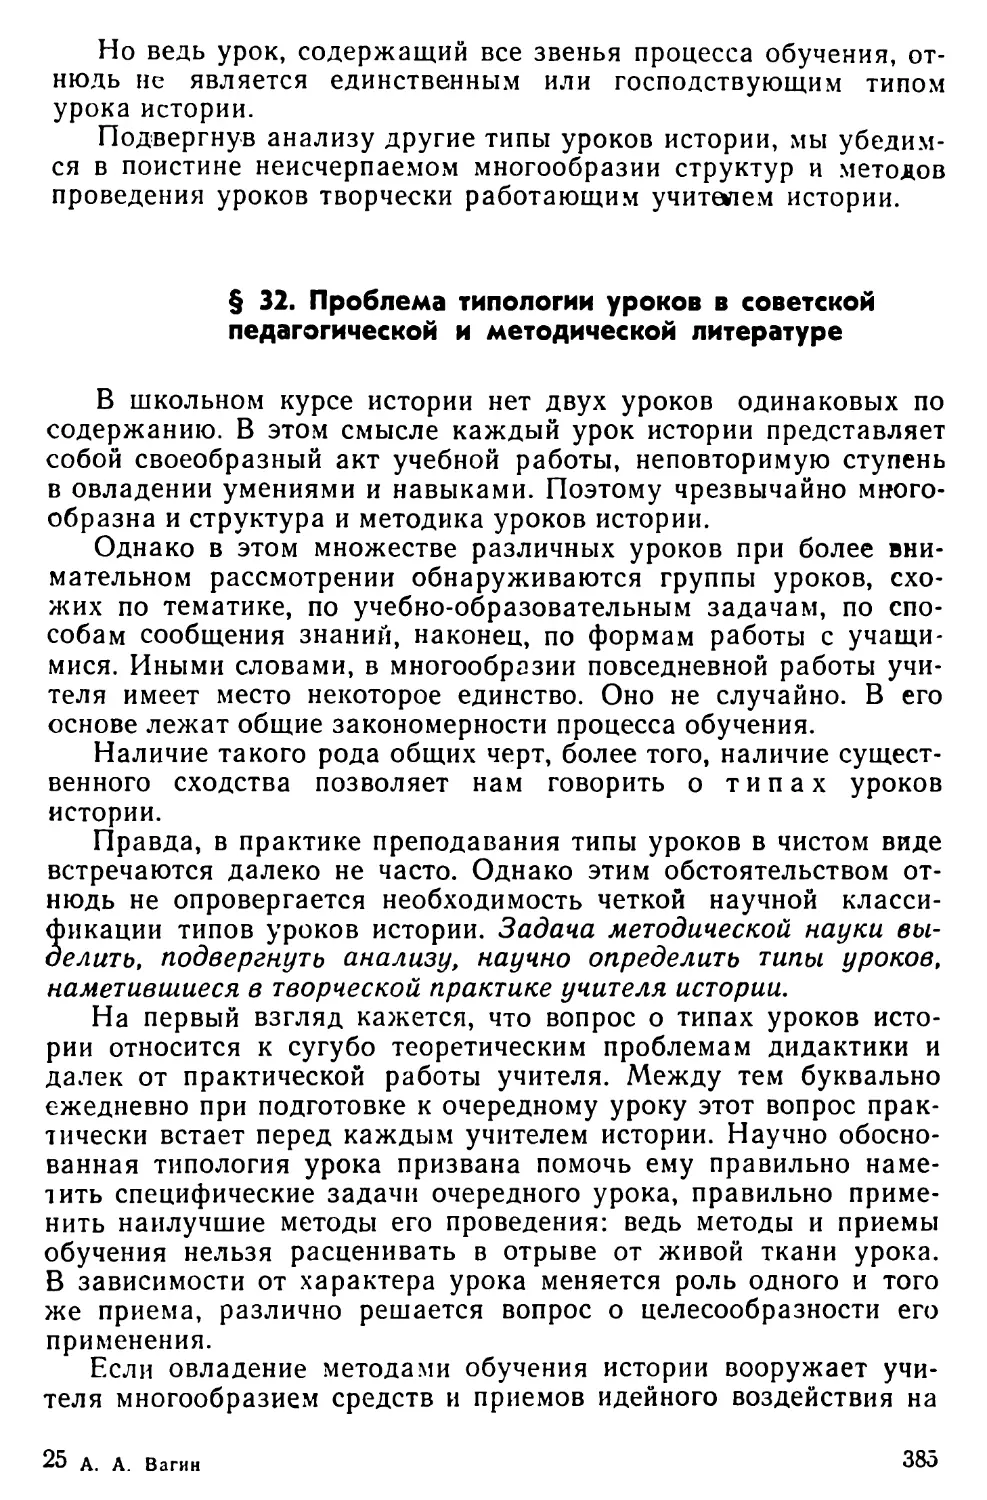 § 32. Проблема типологии уроков в советской педагогической и методической литературе